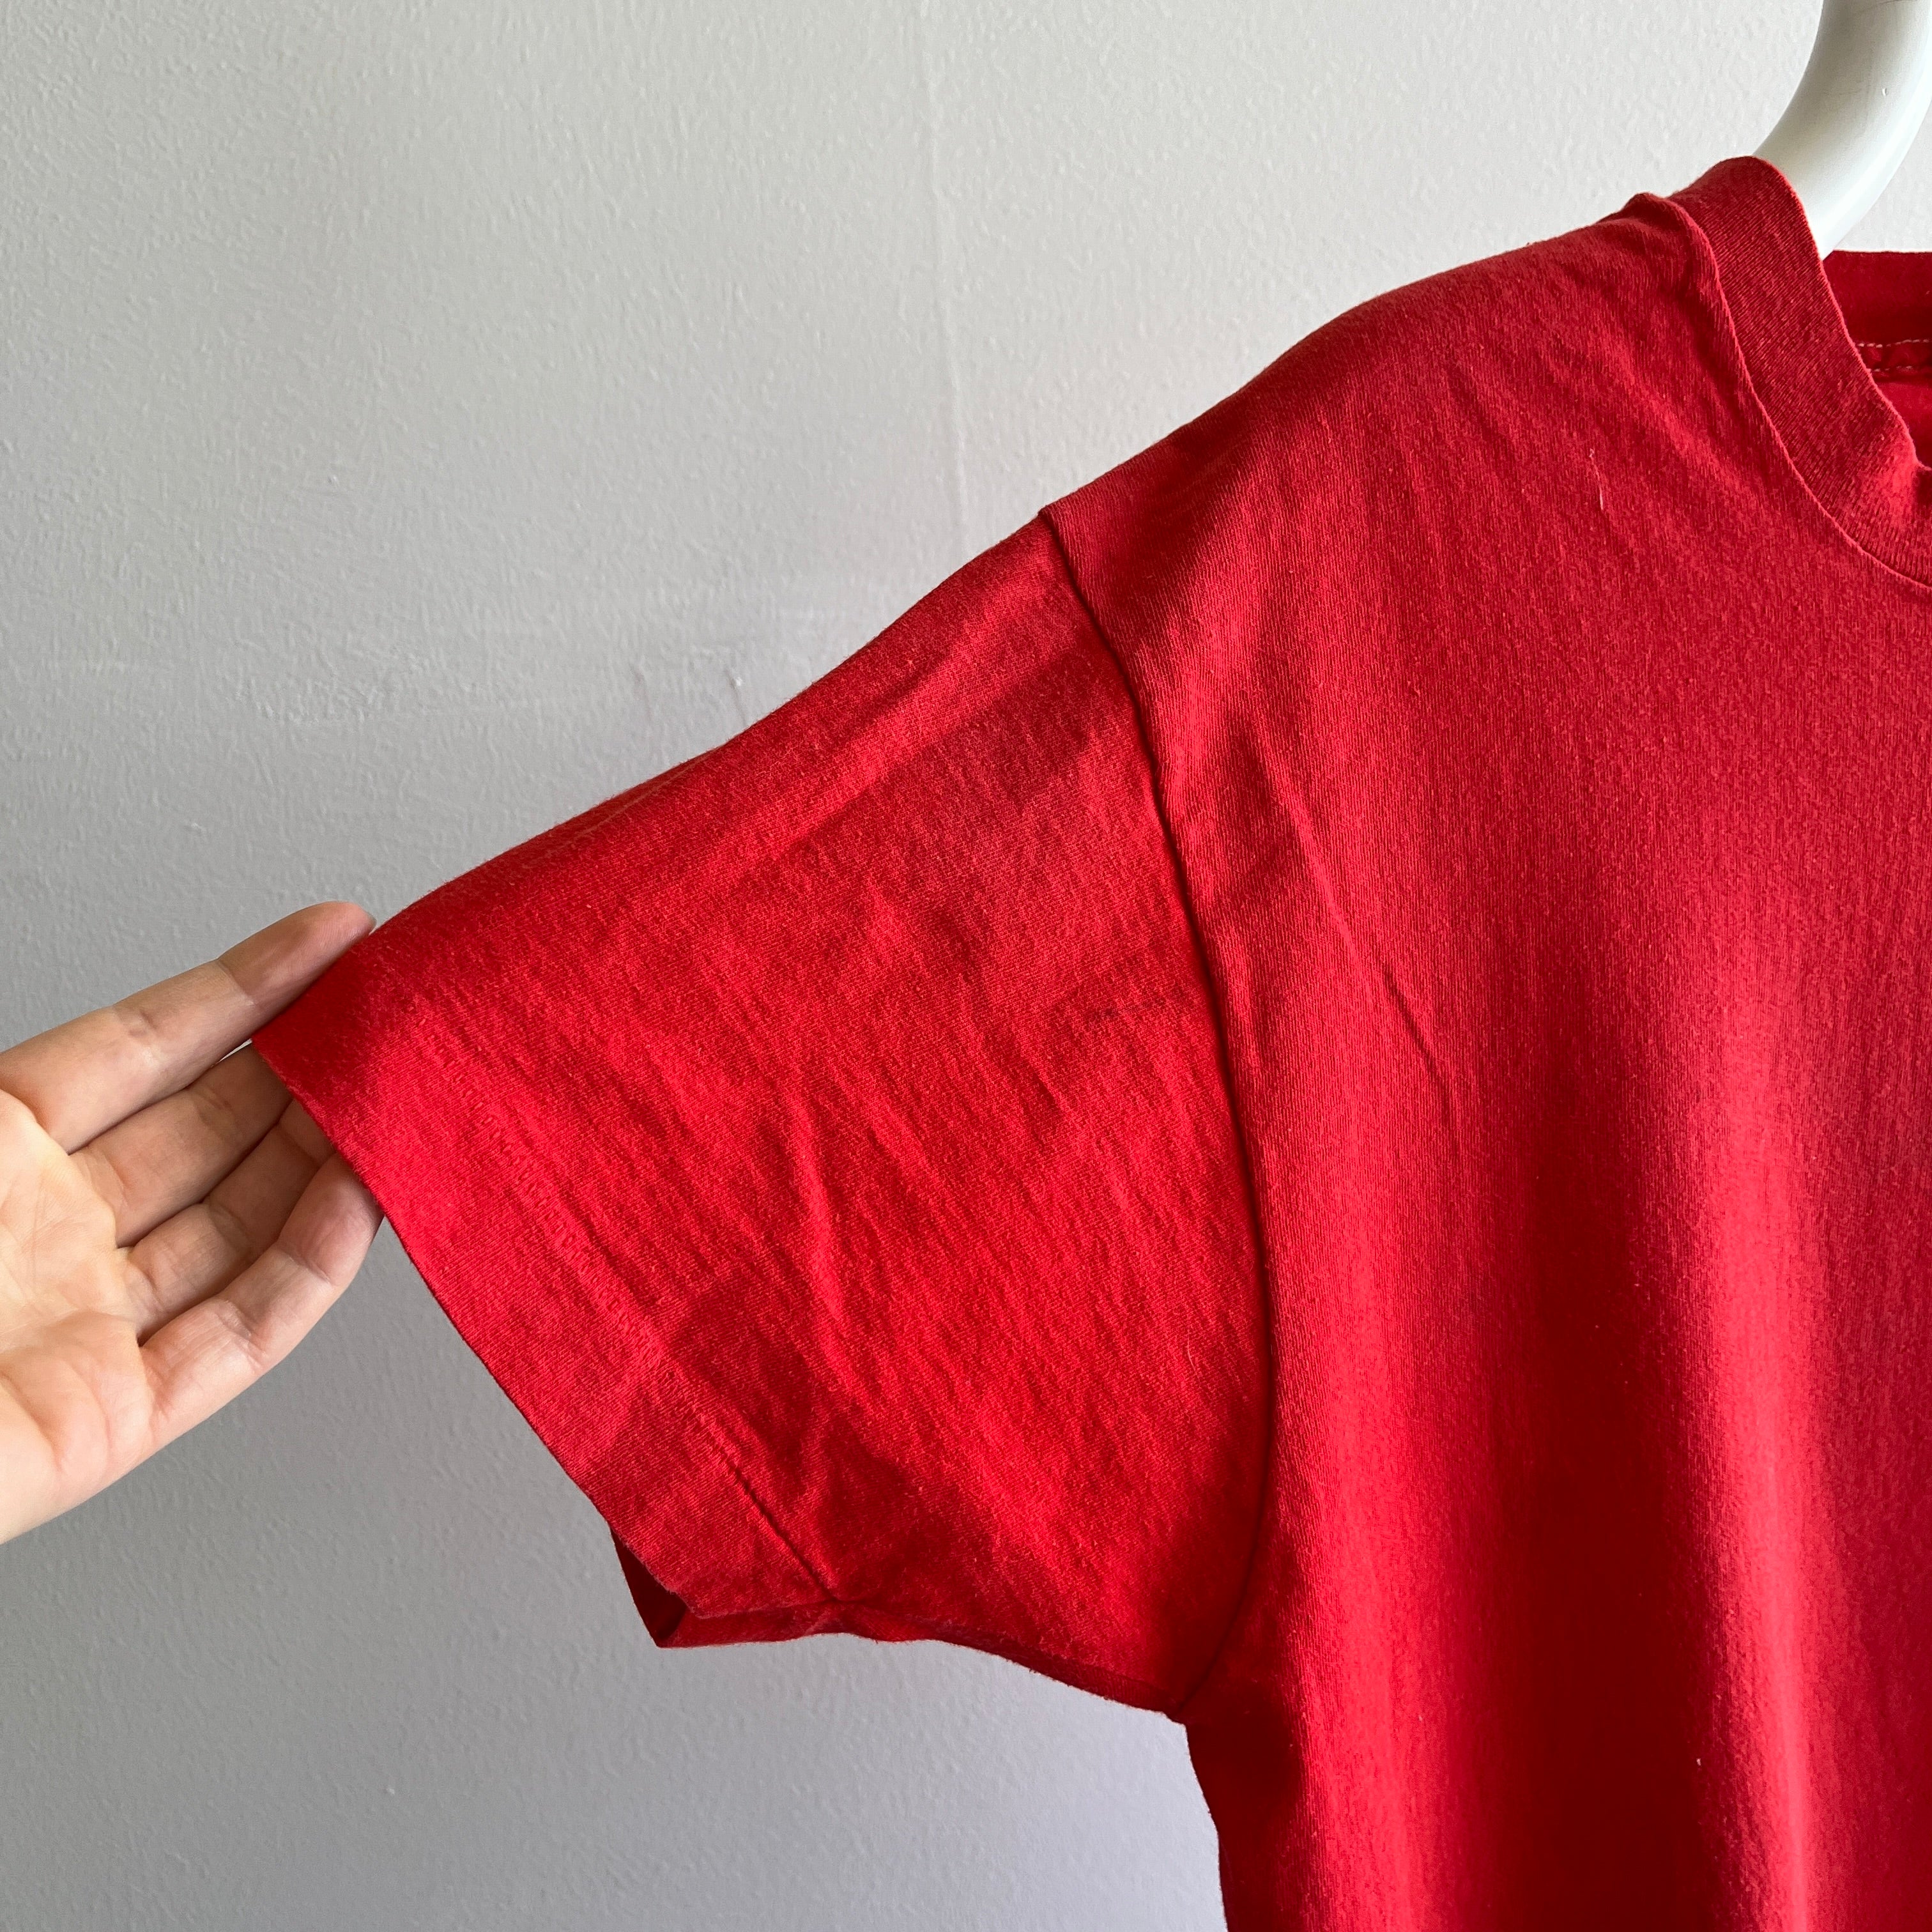 T-shirt de poche rouge vierge FOTL des années 1980 avec coutures de poche blanches contrastées - ce sont les petites choses !